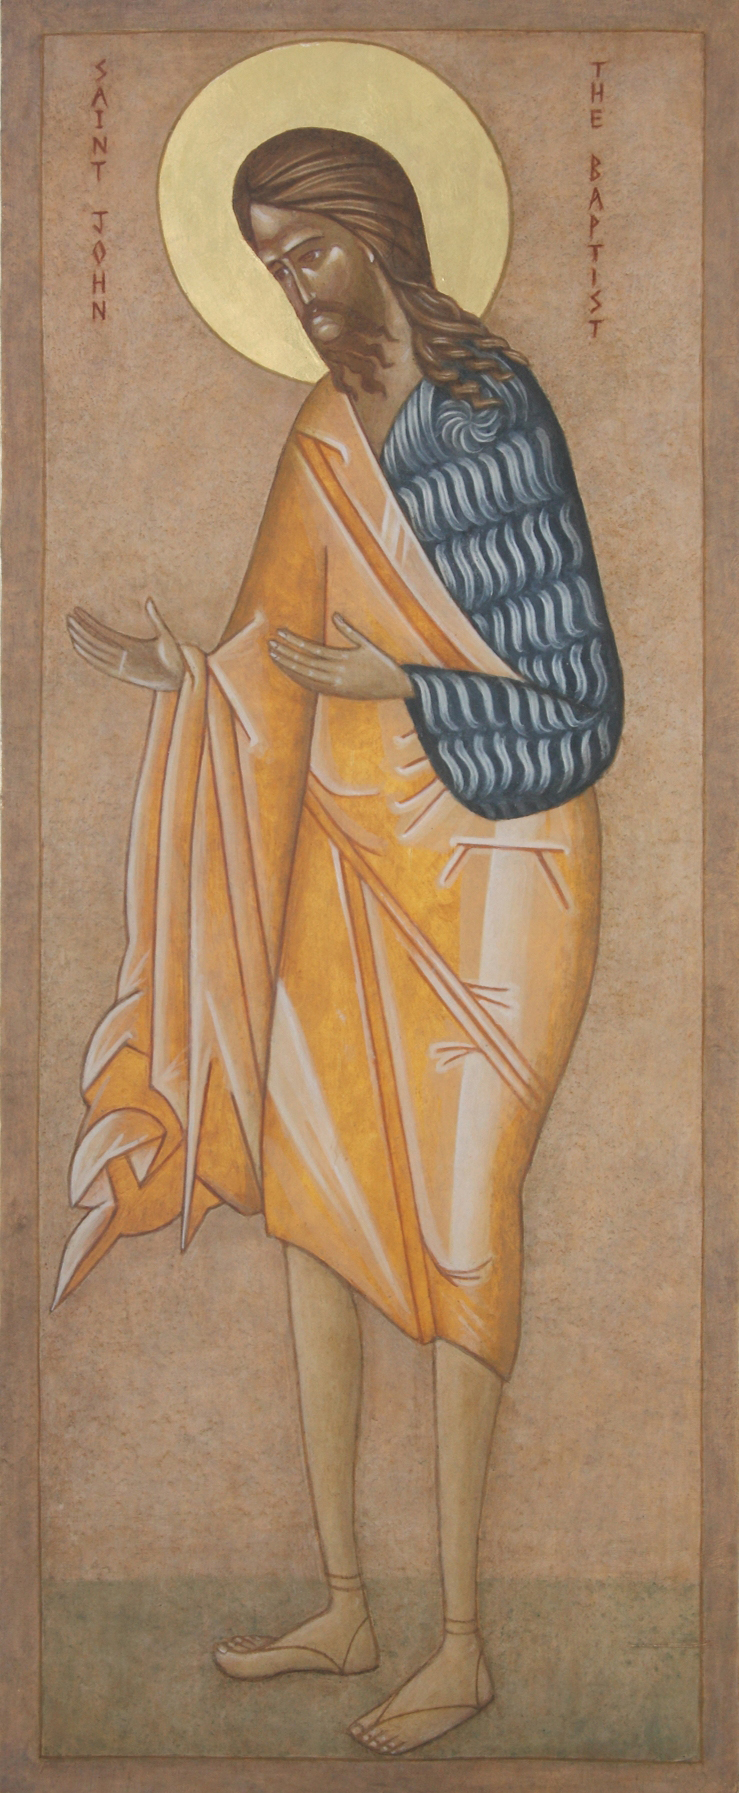 Religious icon: Saint John the Baptist